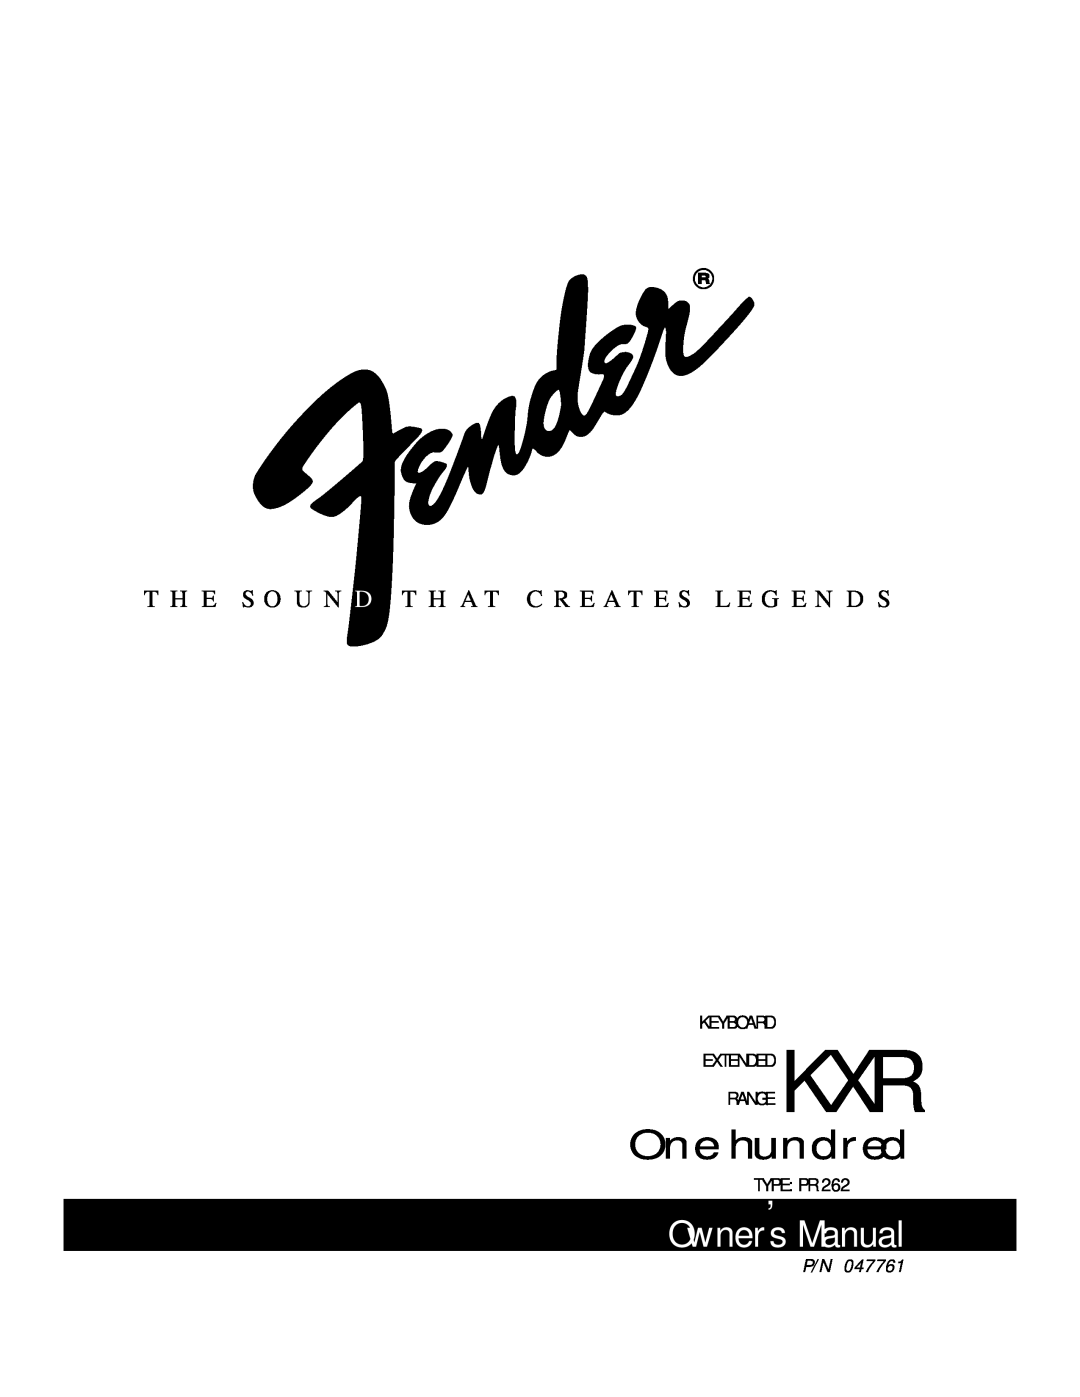 Fender KXR 100 owner manual Owner s Manual, One hundred, Keyboard Kxr Extended Range, Type , Pr 